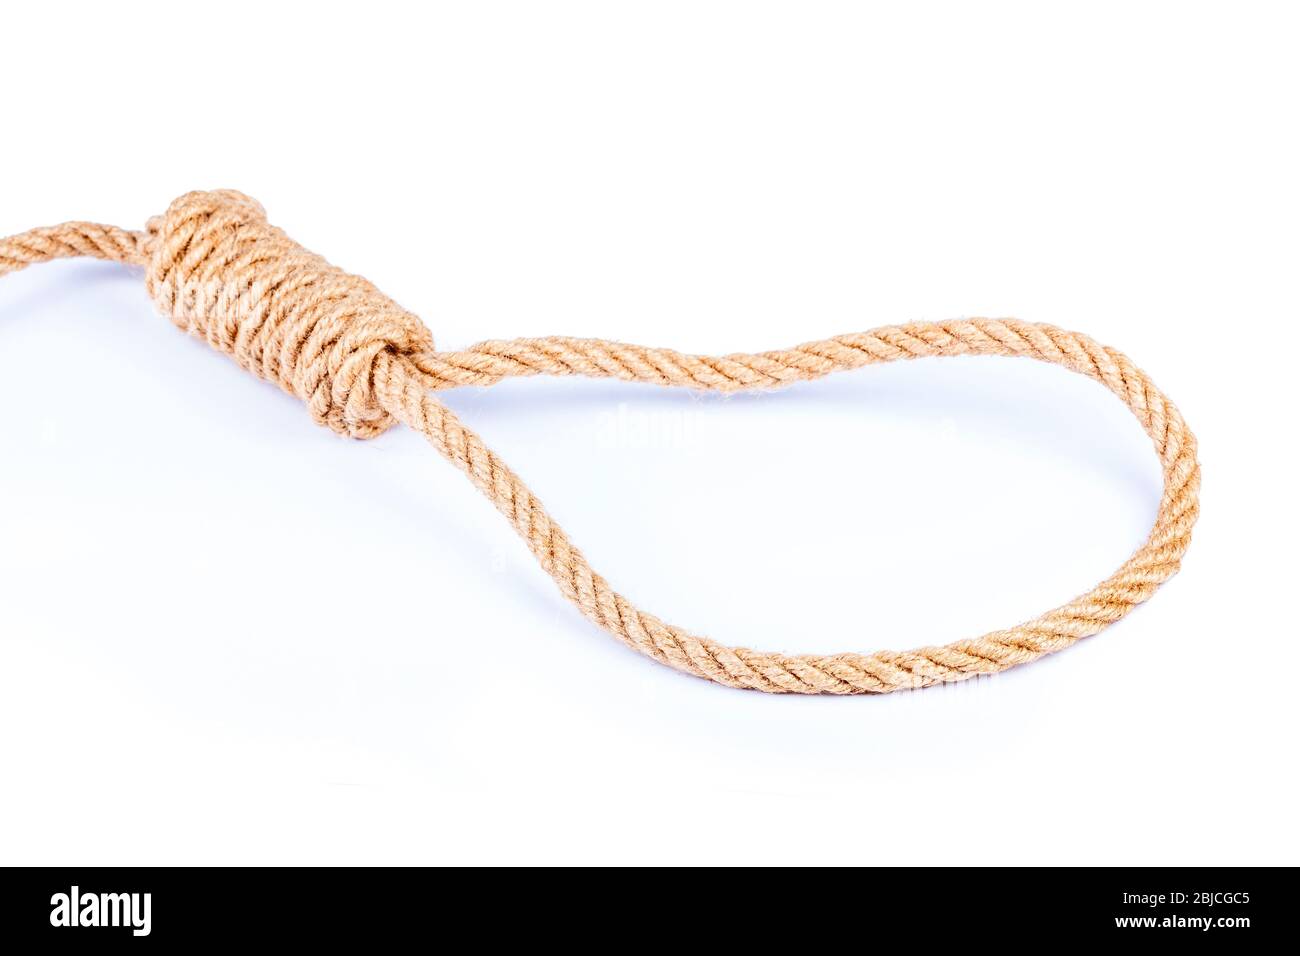 Gebunden Schlinge Symbol, braune Seil Schleife Knoten, Objekt isoliert, weißer Hintergrund, ausgeschnitten. Selbstmord, Todesurteil symbolisch, Galgen, Selbstmordgedanken Stockfoto